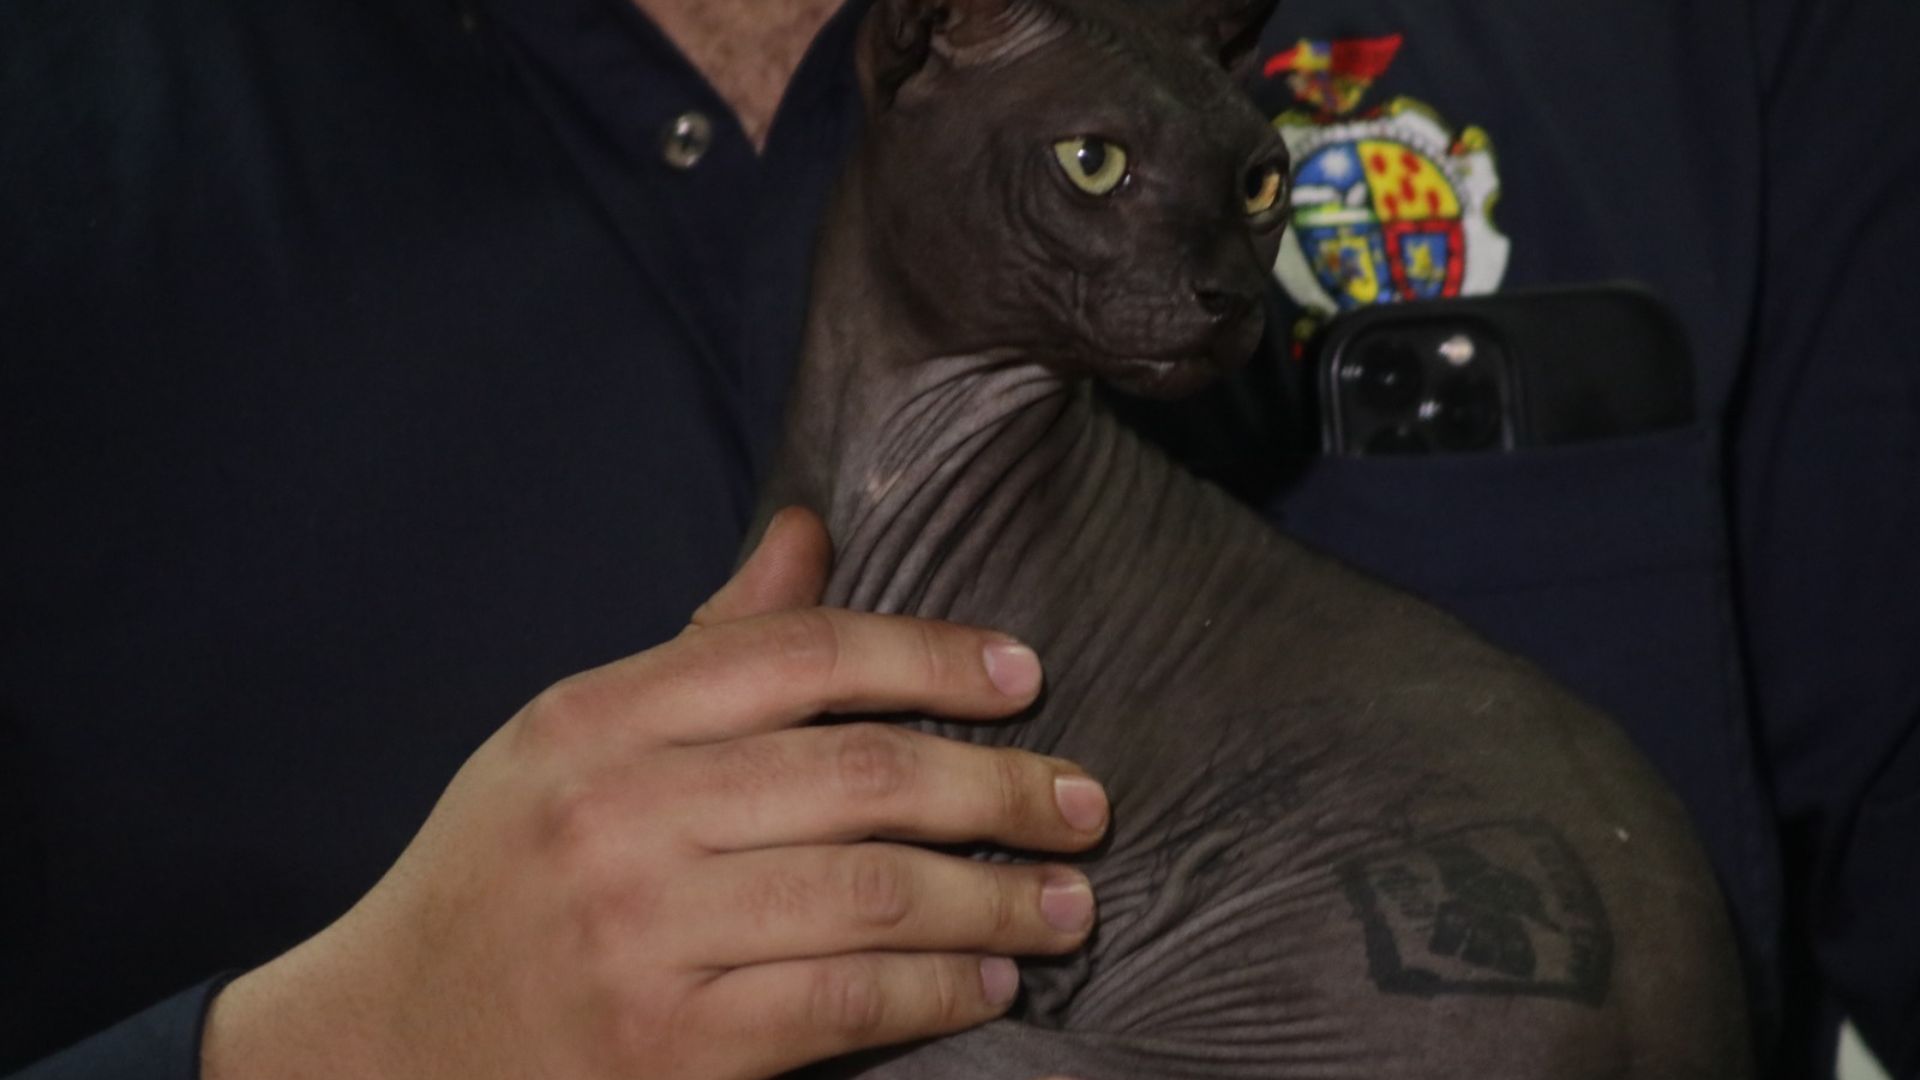 Tatuado y enfermo: el drama del gato “preso” con unos narcos que vale más de USD 2.000